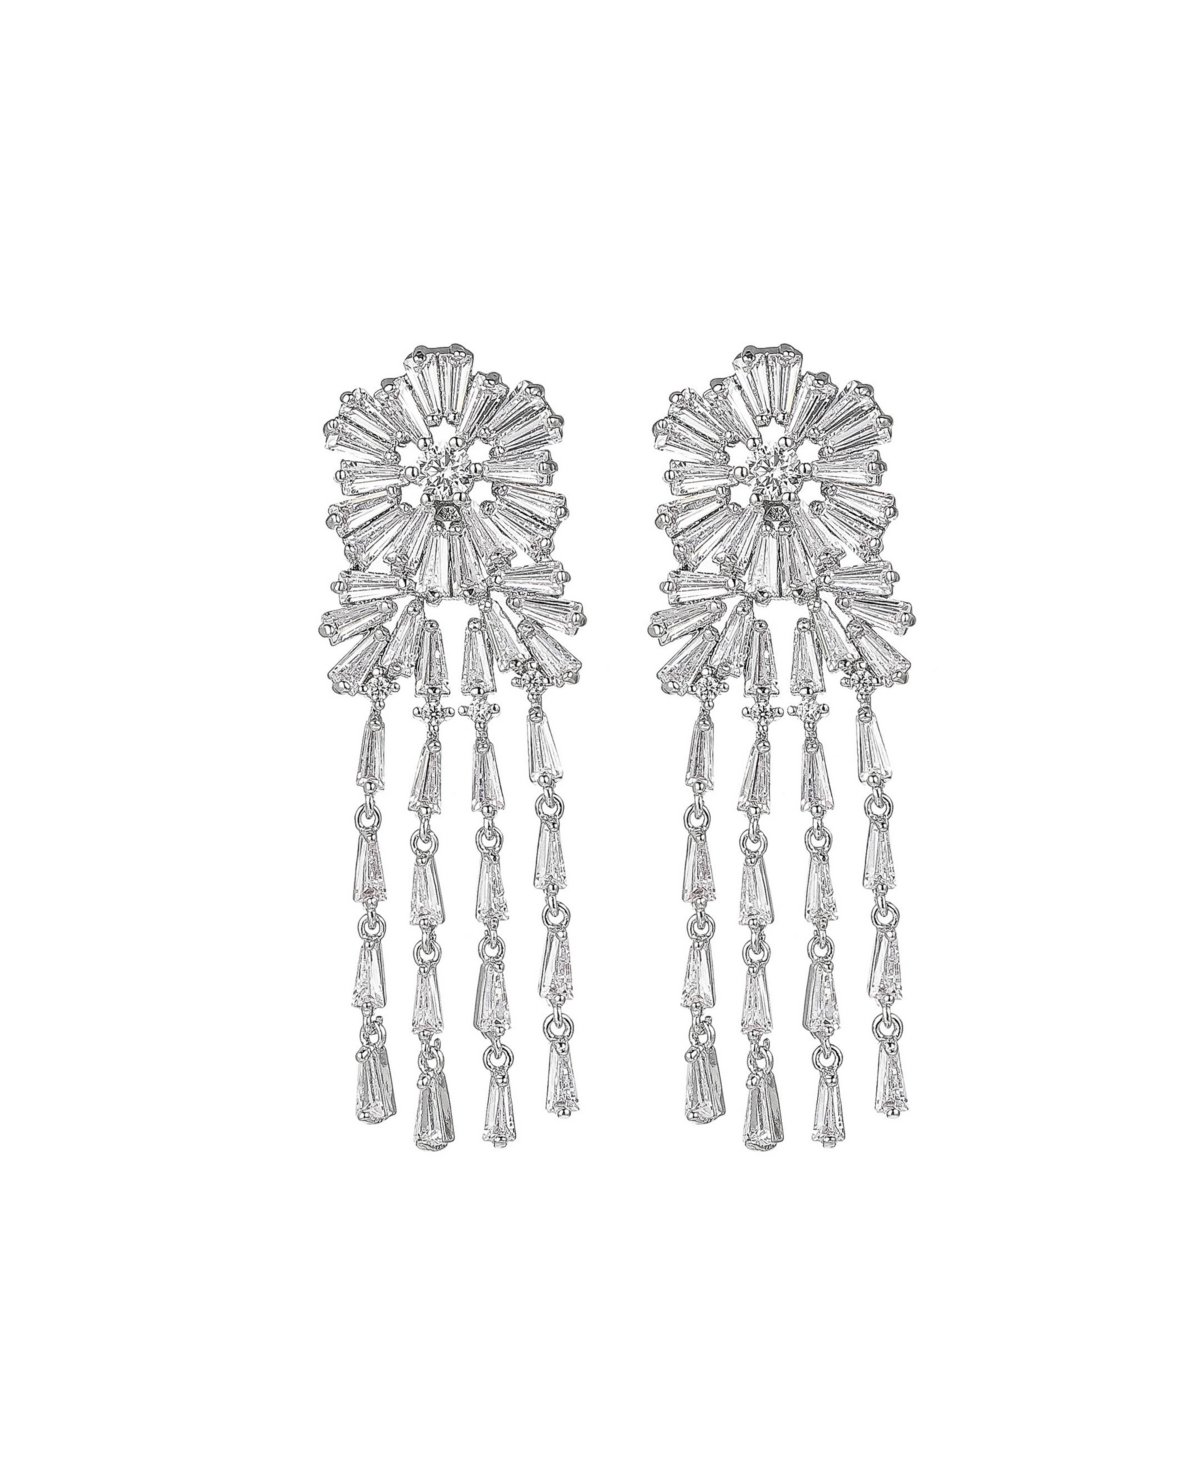 Silver-Tone Flower Chandelier Earrings - Silver-Tone